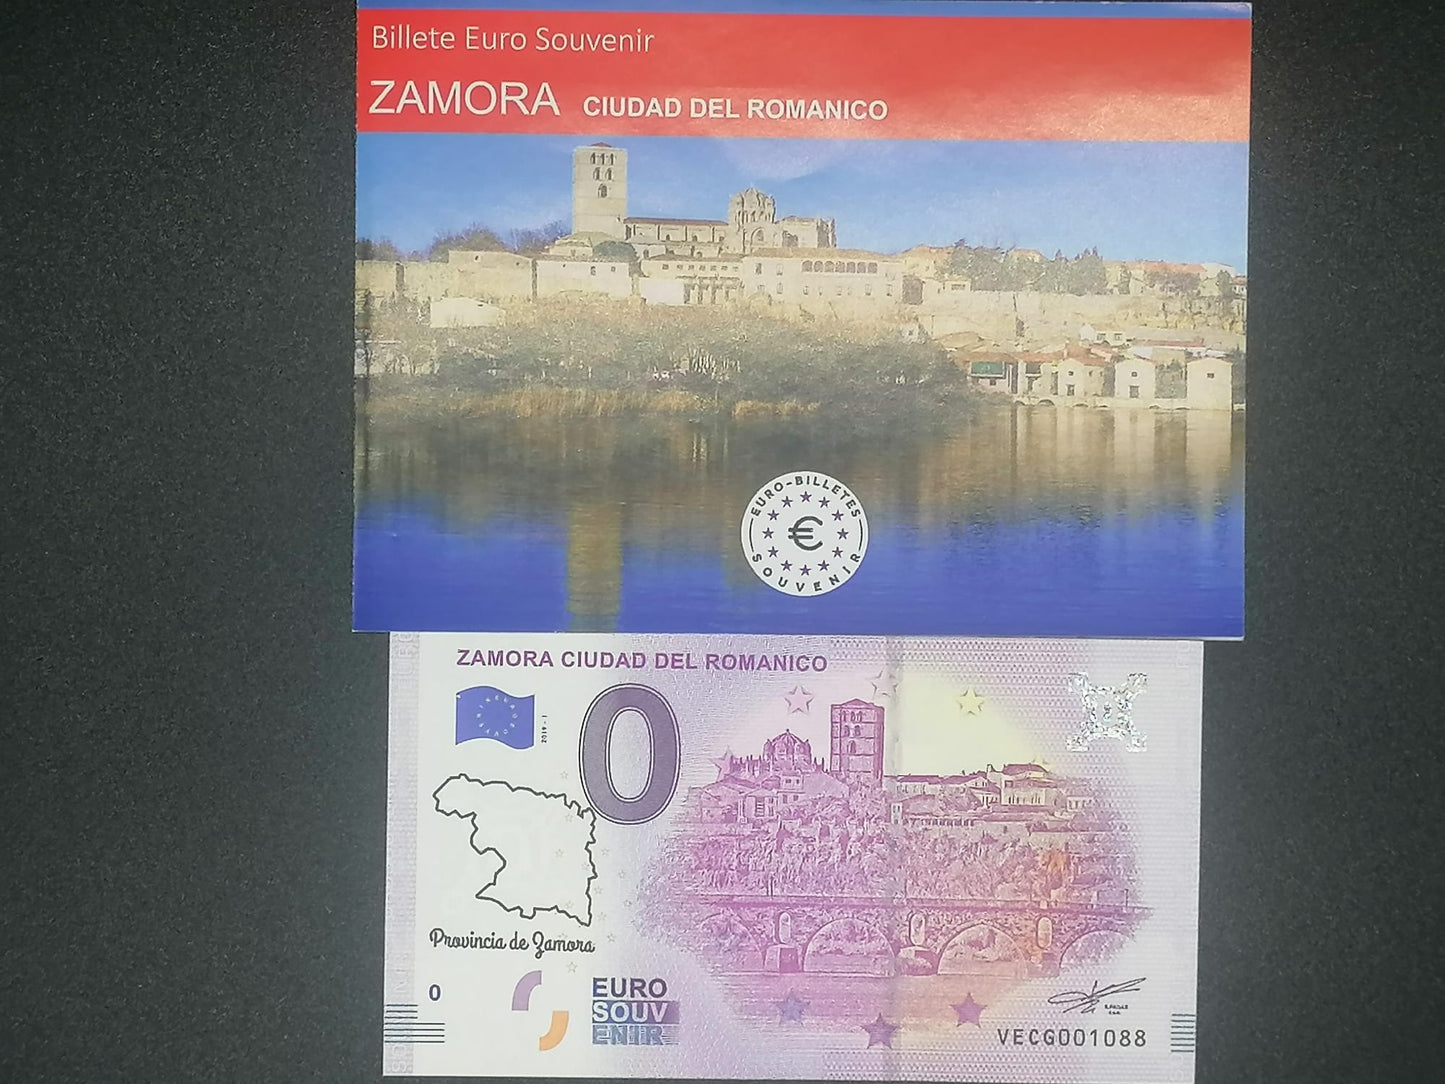 Edición 2018-1 Zamora Ciudad del Románico con sello mapa